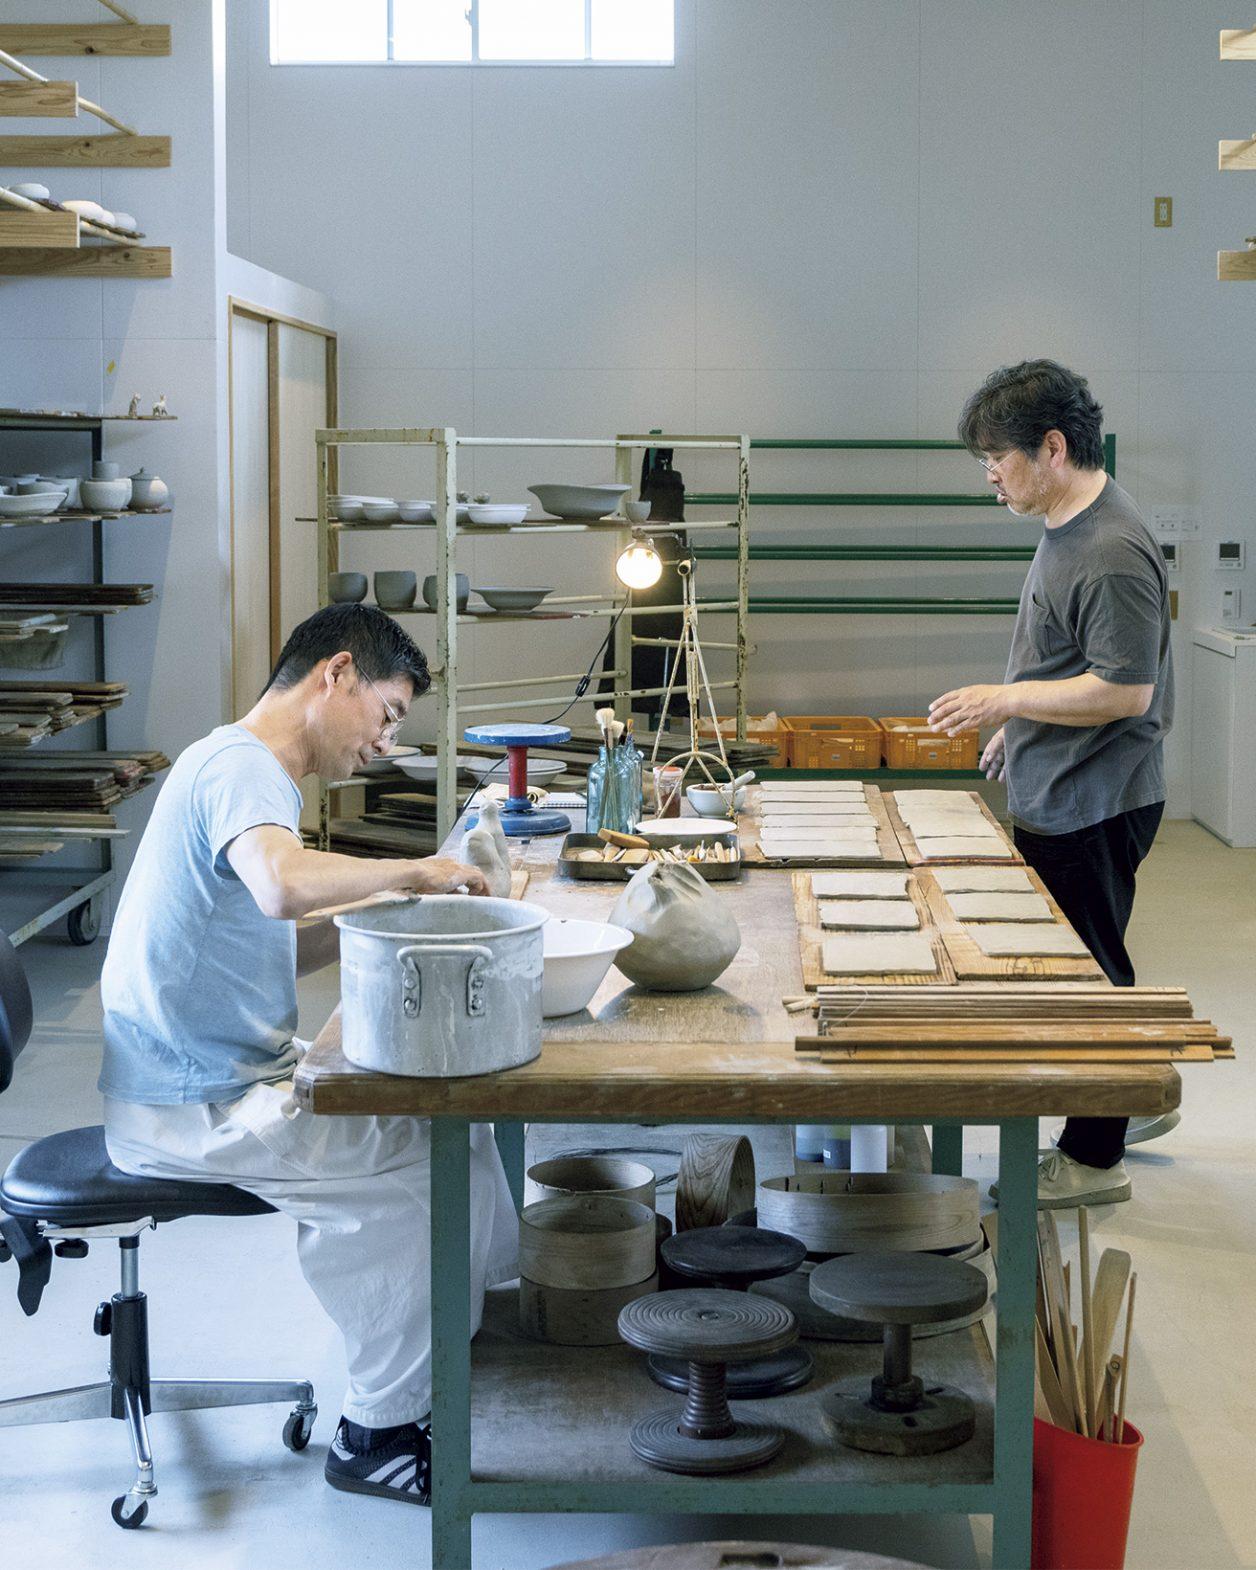 皆川 明＋内田鋼一が〈VISON〉で初めて共同制作。作陶したうつわの展覧会が始まりました。